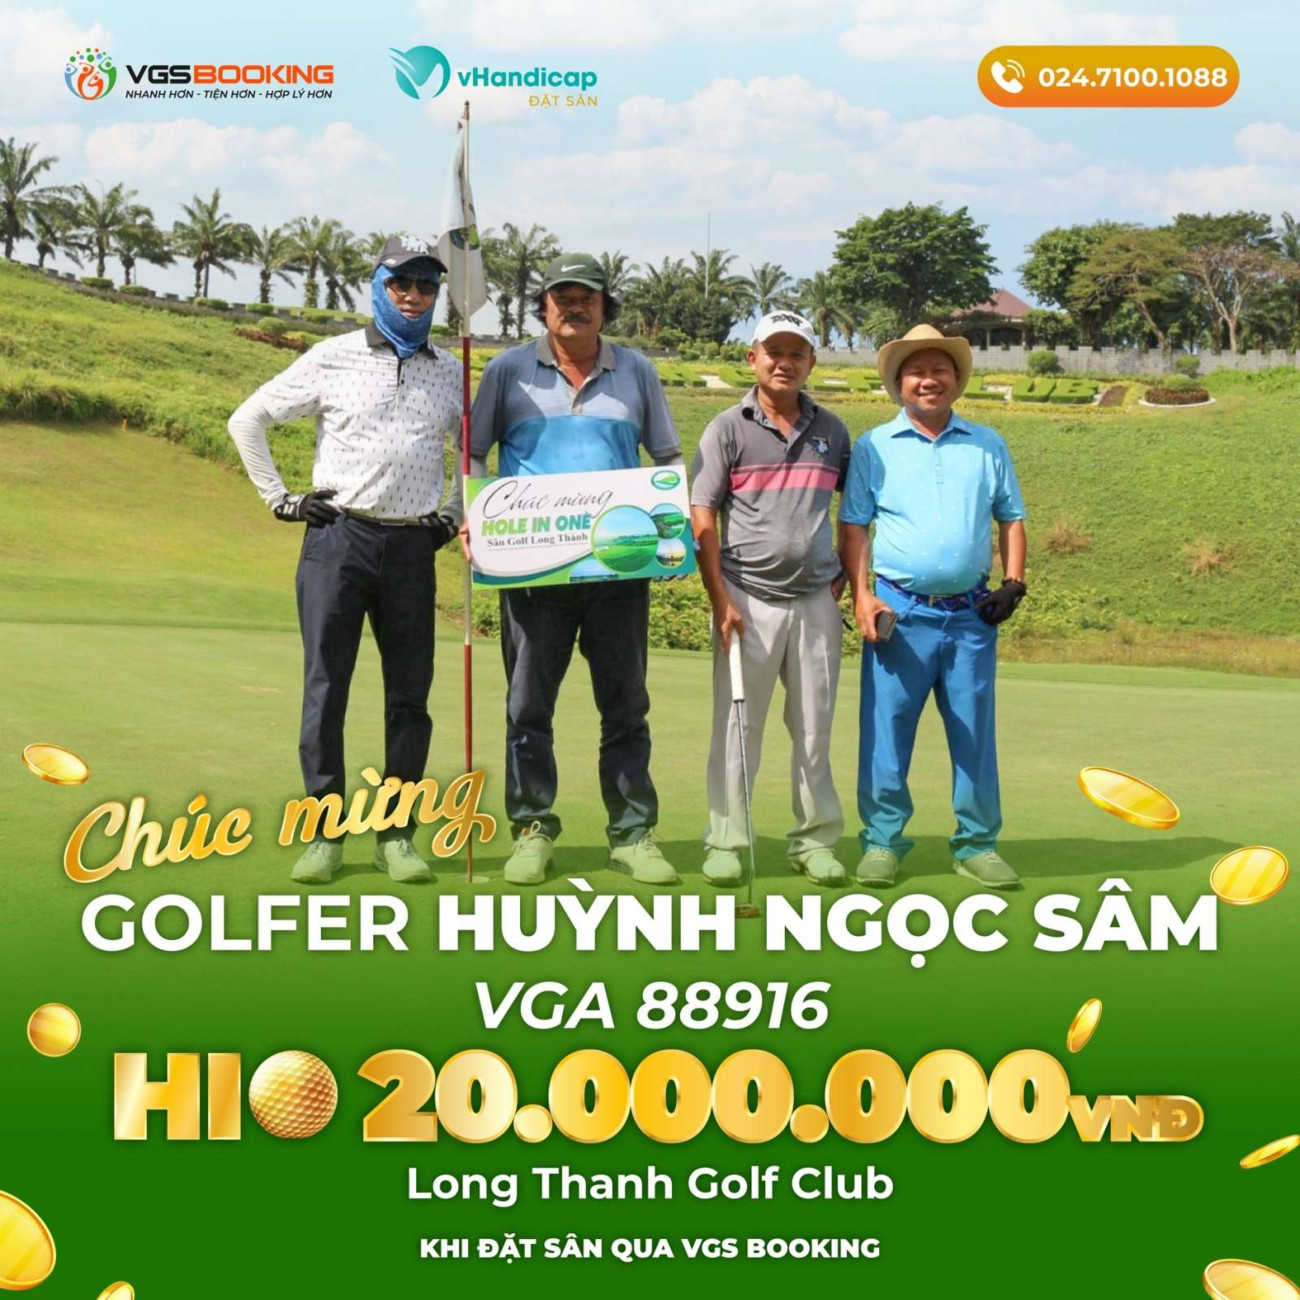 Đặt sân qua VGS Booking, golfer Huỳnh Ngọc Sâm được tặng 20 triệu đồng tiền thưởng khi ghi HIO - Ảnh 1.